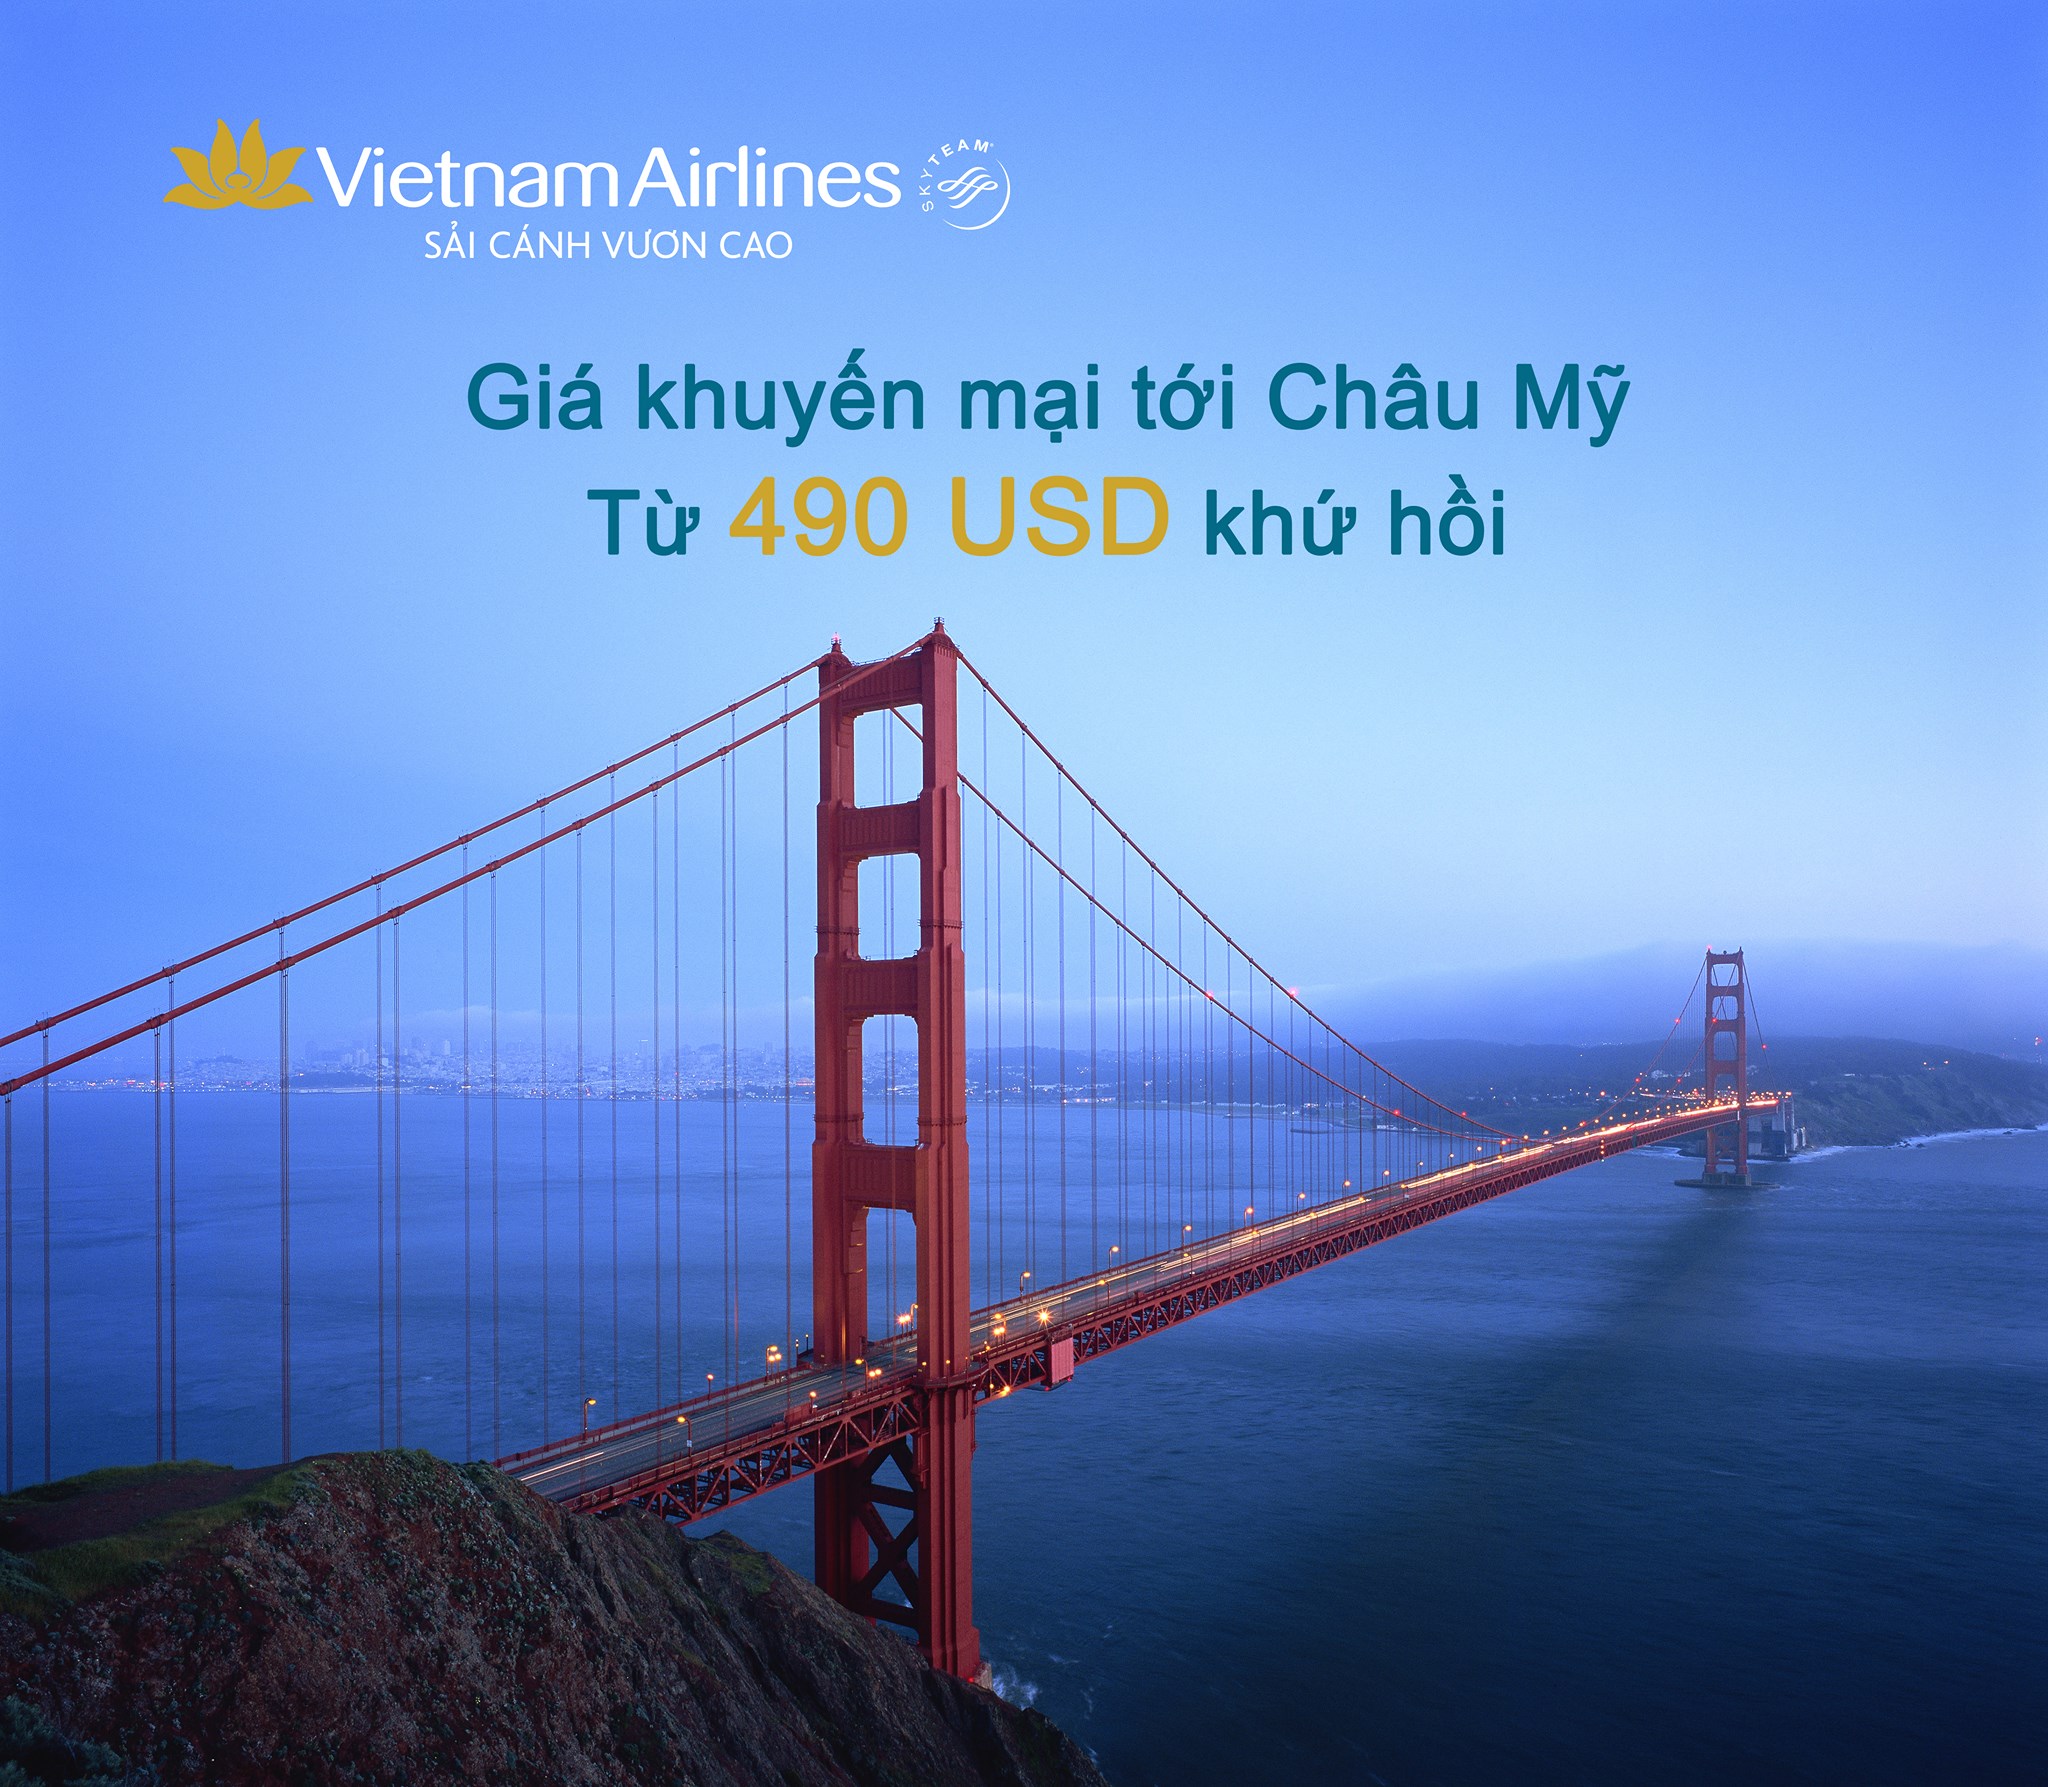 Vui chơi hết ý với loạt vé đi Châu Mỹ chỉ 490 USD của Vietnam Airlines